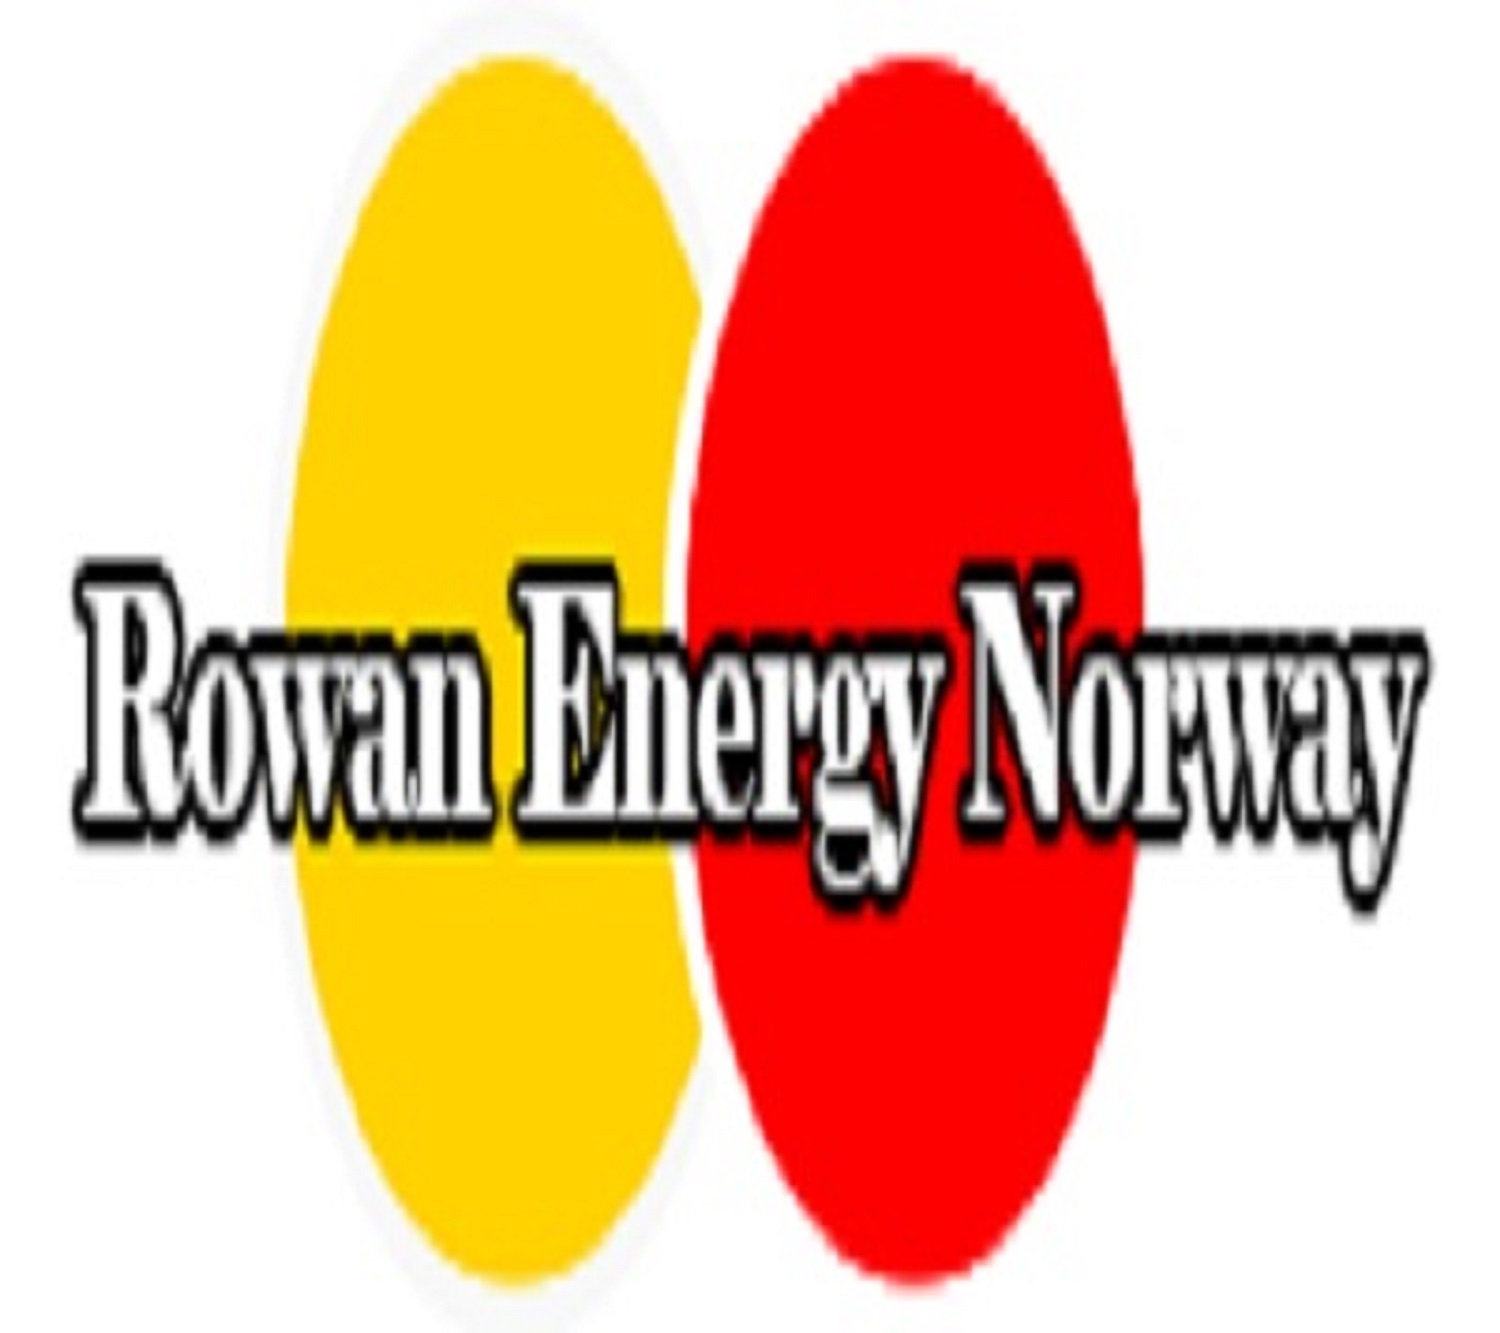 Rowan Energy Norway